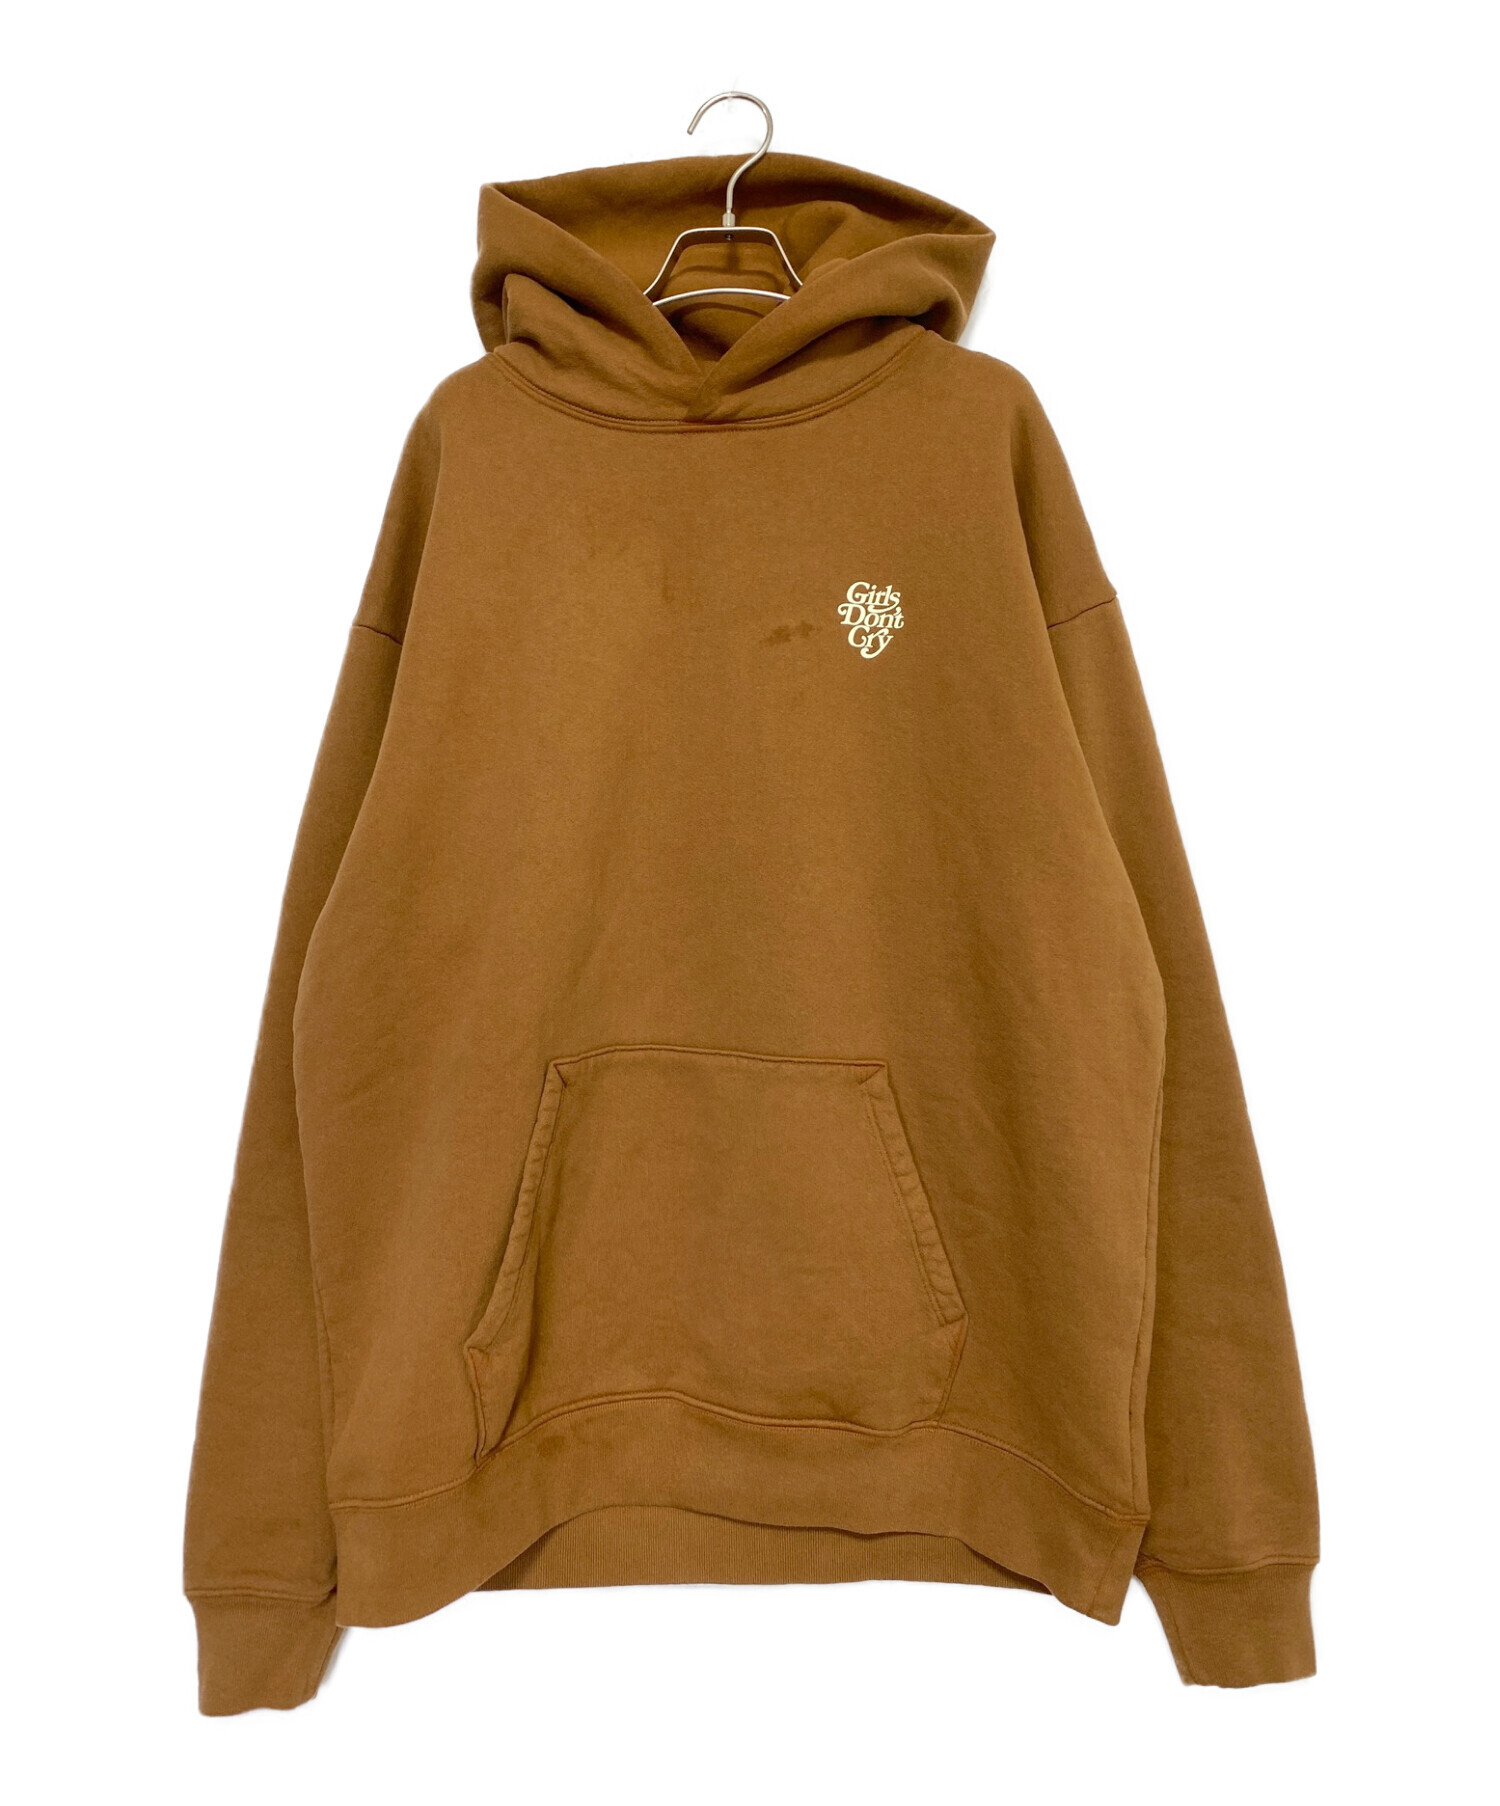 28000円でいかがでしょうかgirls don't cry hoodie brown XL